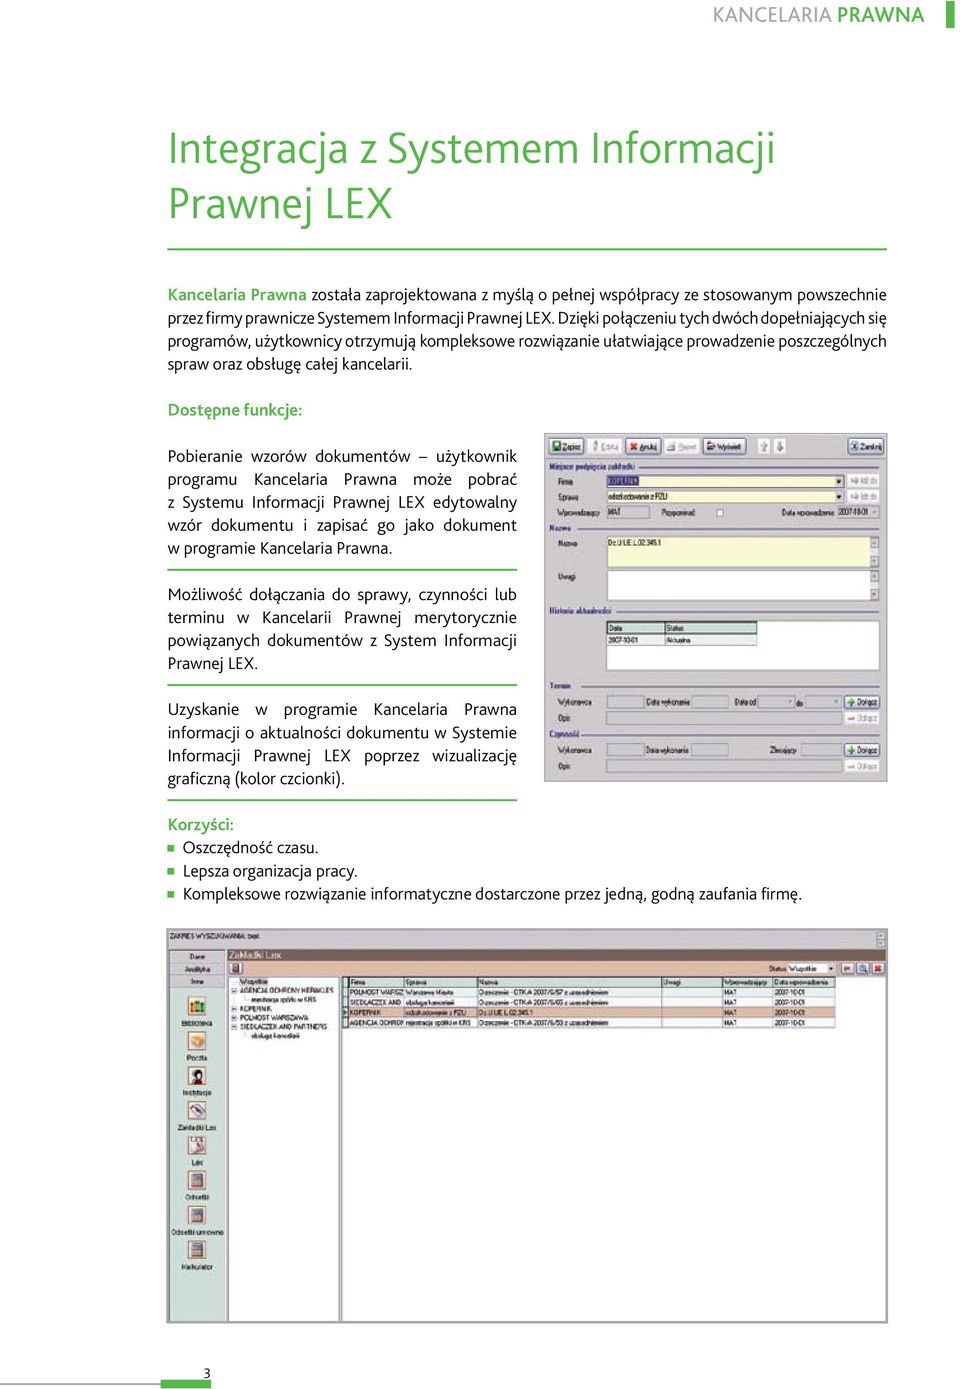 Dostępne funkcje: Pobieranie wzorów dokumentów użytkownik programu Kancelaria Prawna może pobrać z Systemu Informacji Prawnej LEX edytowalny wzór dokumentu i zapisać go jako dokument w programie